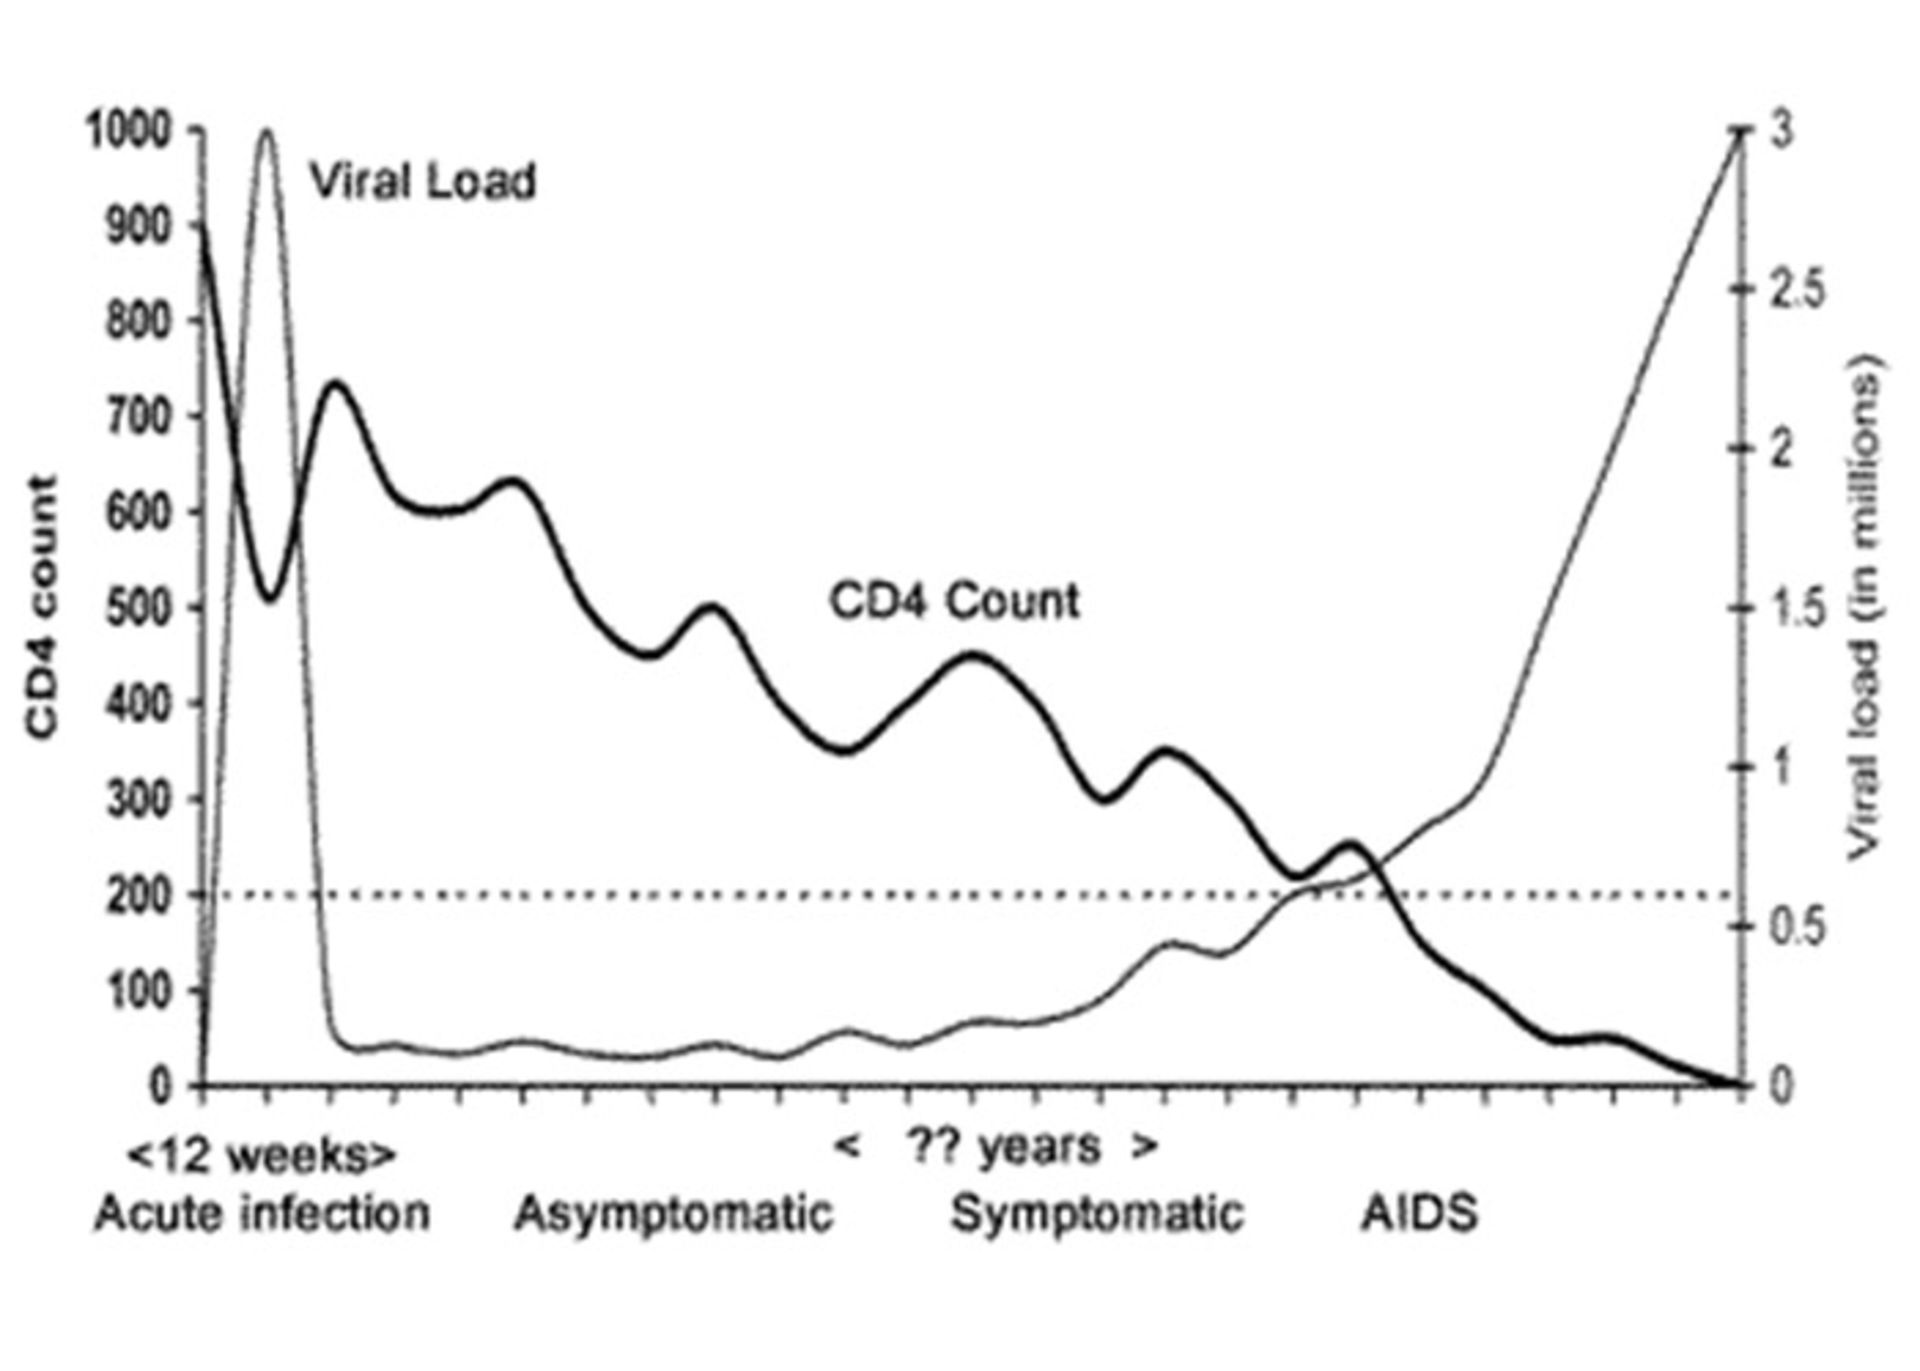 مرجع متخصصين ايران نمودار تغيير در سلول هاي CD4 در بيماري ايدز